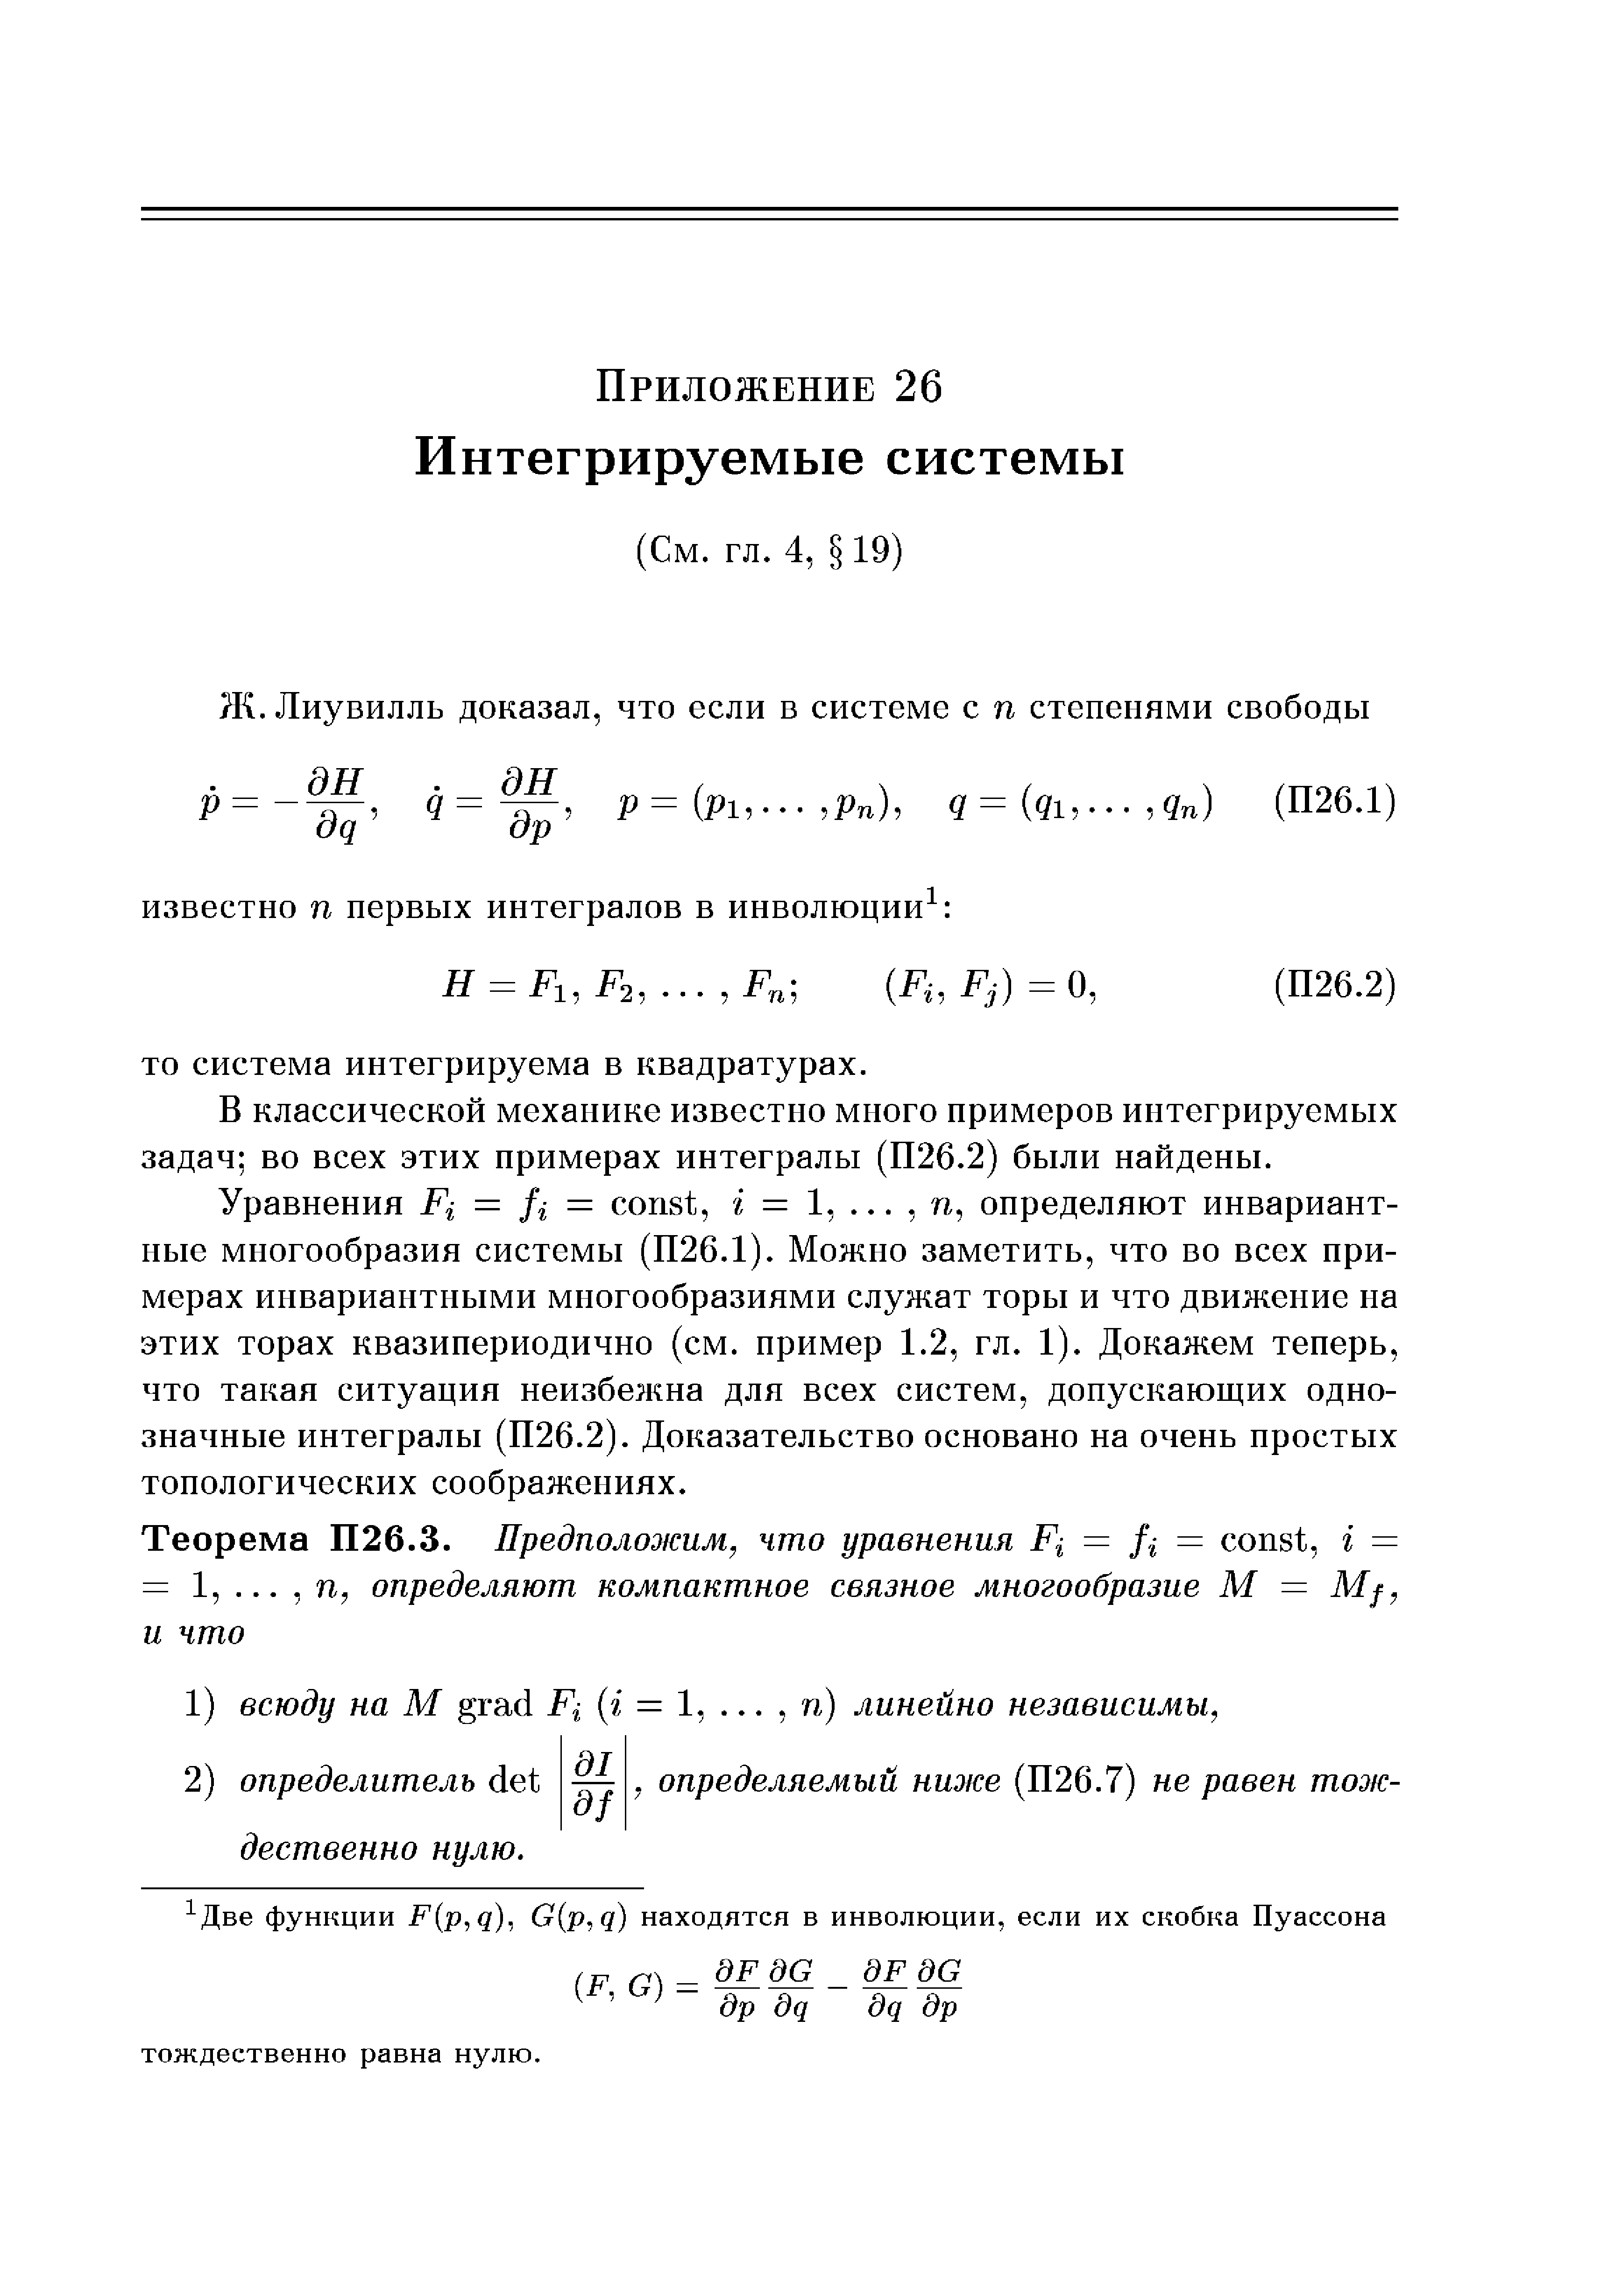 В классической механике известно много примеров интегрируемых задач во всех этих примерах интегралы (П26.2) были найдены.
